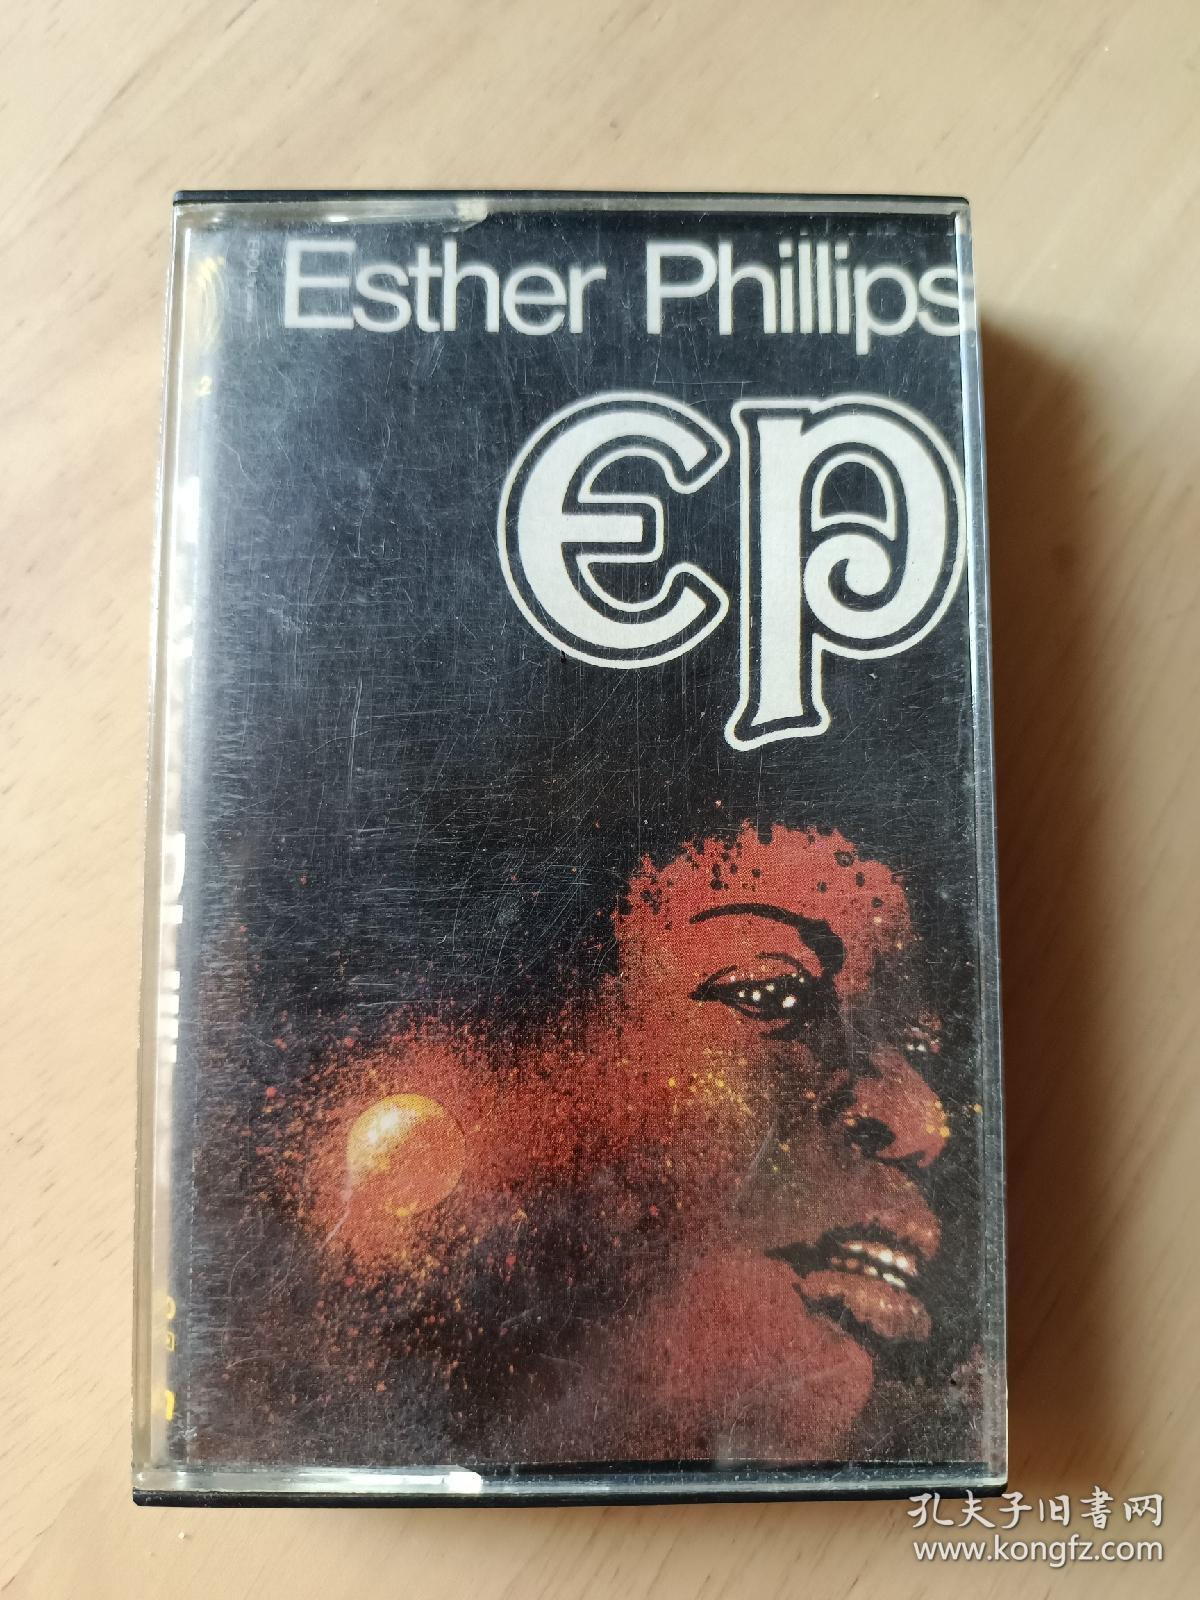 艾斯菲利普斯 esther phillips【EP】进口原版老磁带，黑卡，品相如图，无歌词，播放正常，值得收藏。